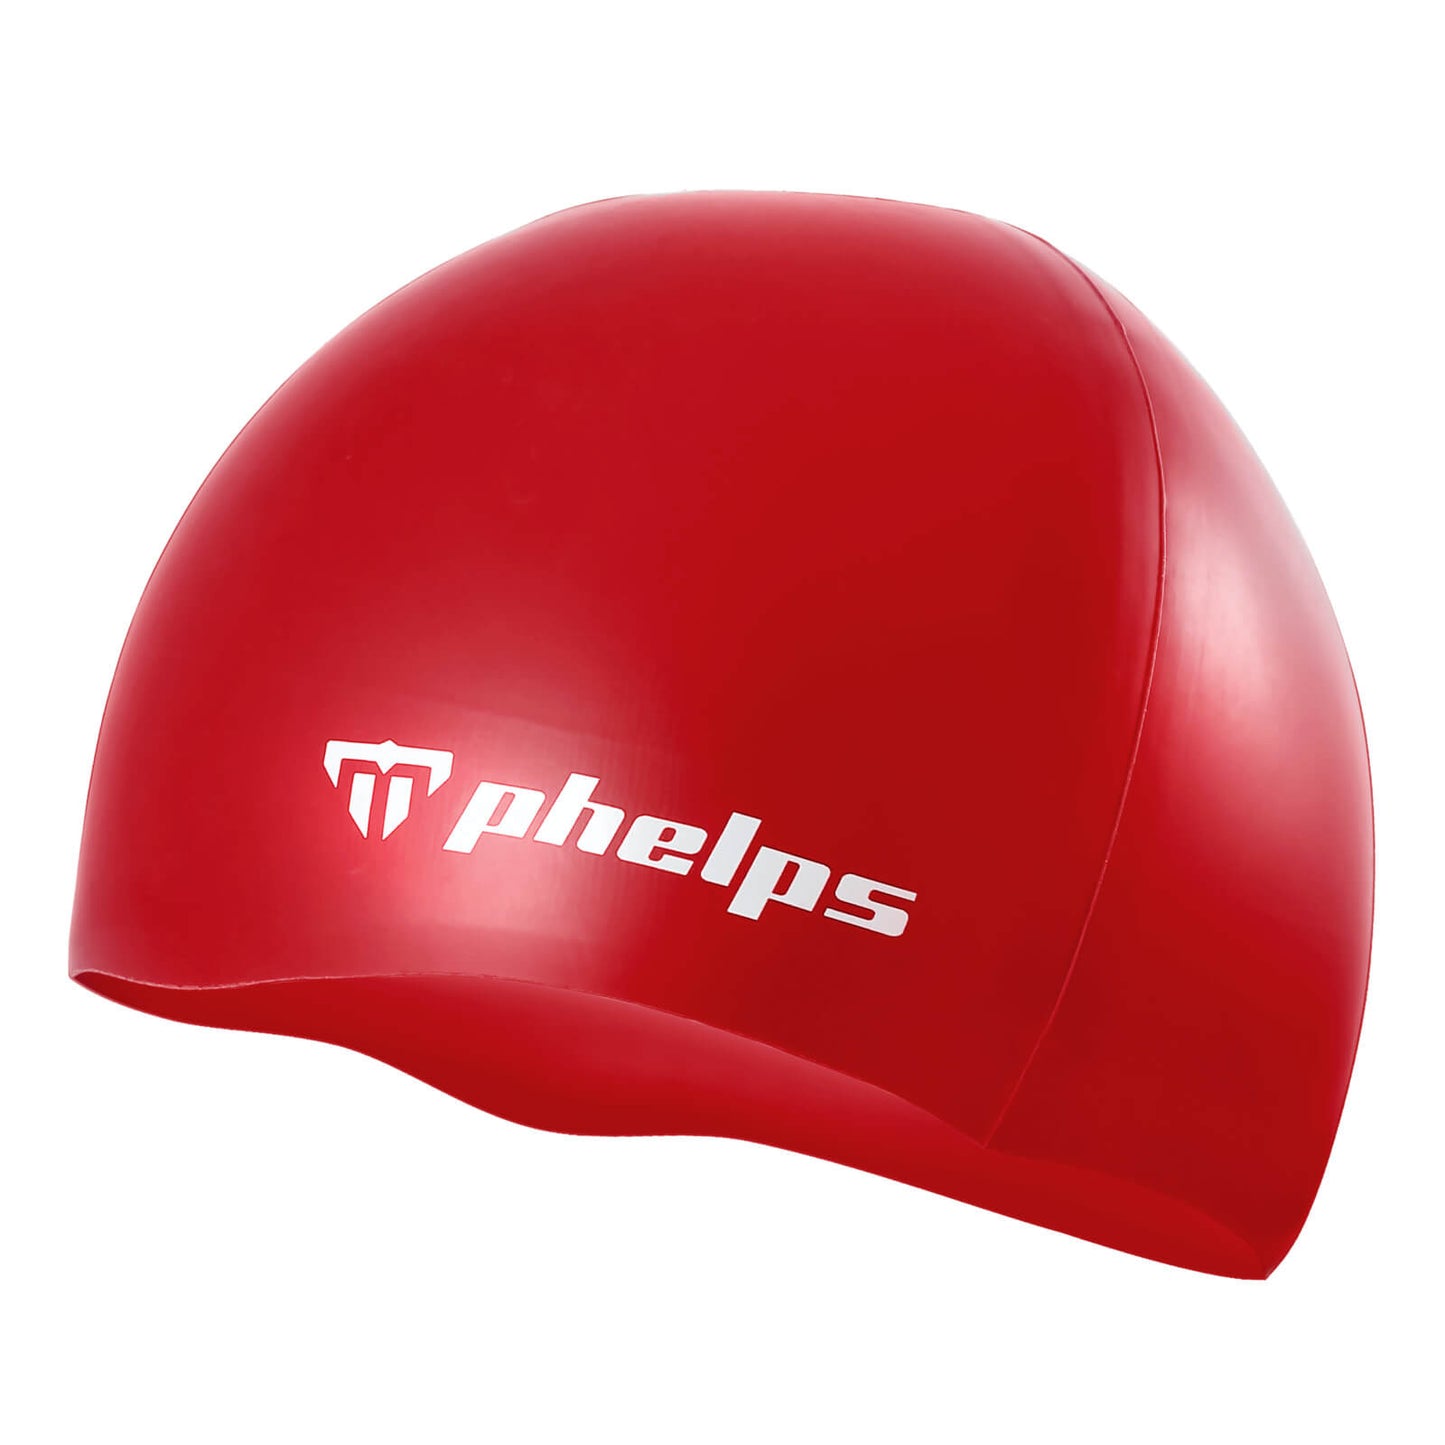 Phelps Classic Silicone Men's Swimming Cap Red